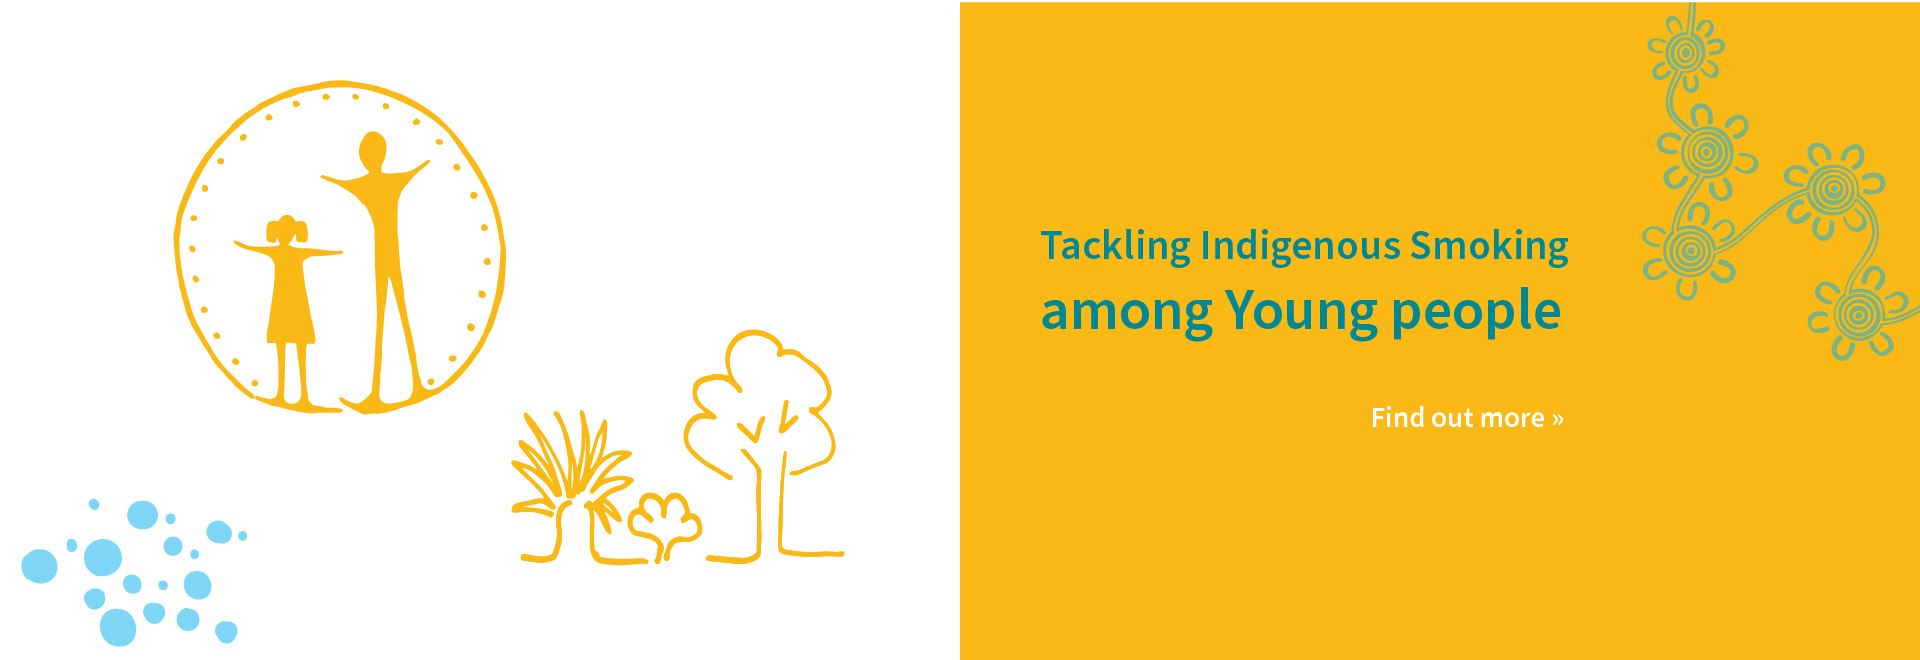 Tackling Indigenous Smoking among Young People